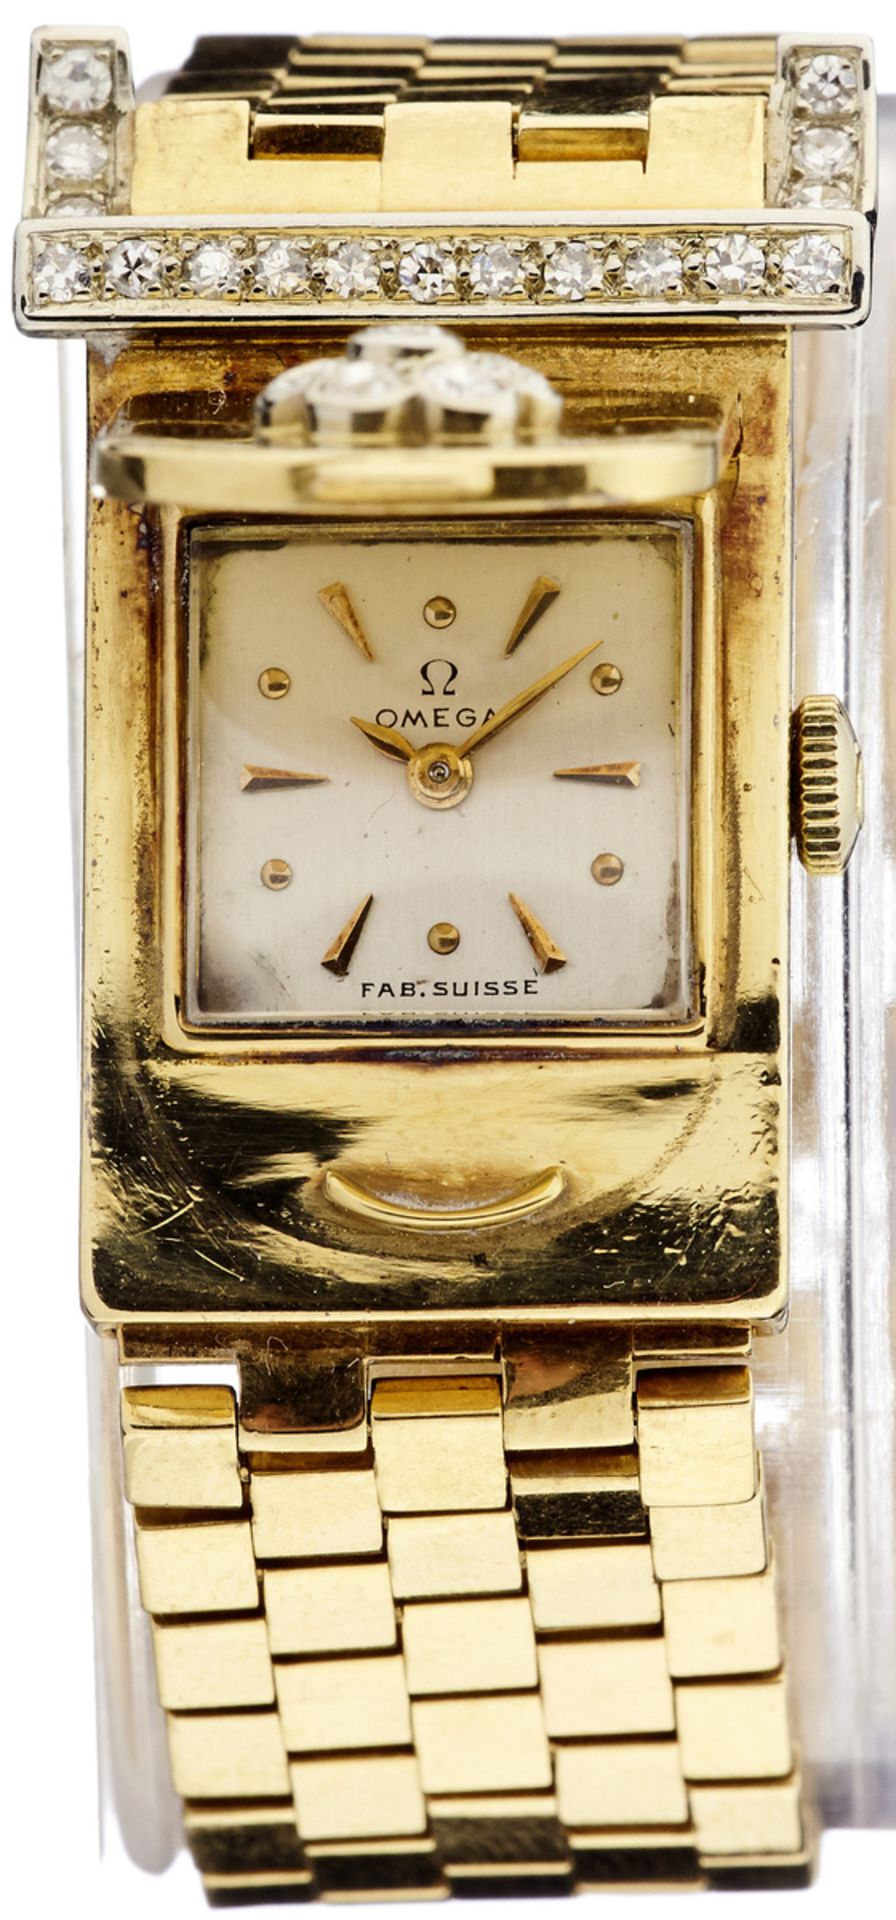 Clip-Armbanduhr "Omega"Um 1950. Das Gehäuse und das Gliederarmband aus Gelbgold 750. Gehäuse mit - Bild 2 aus 2